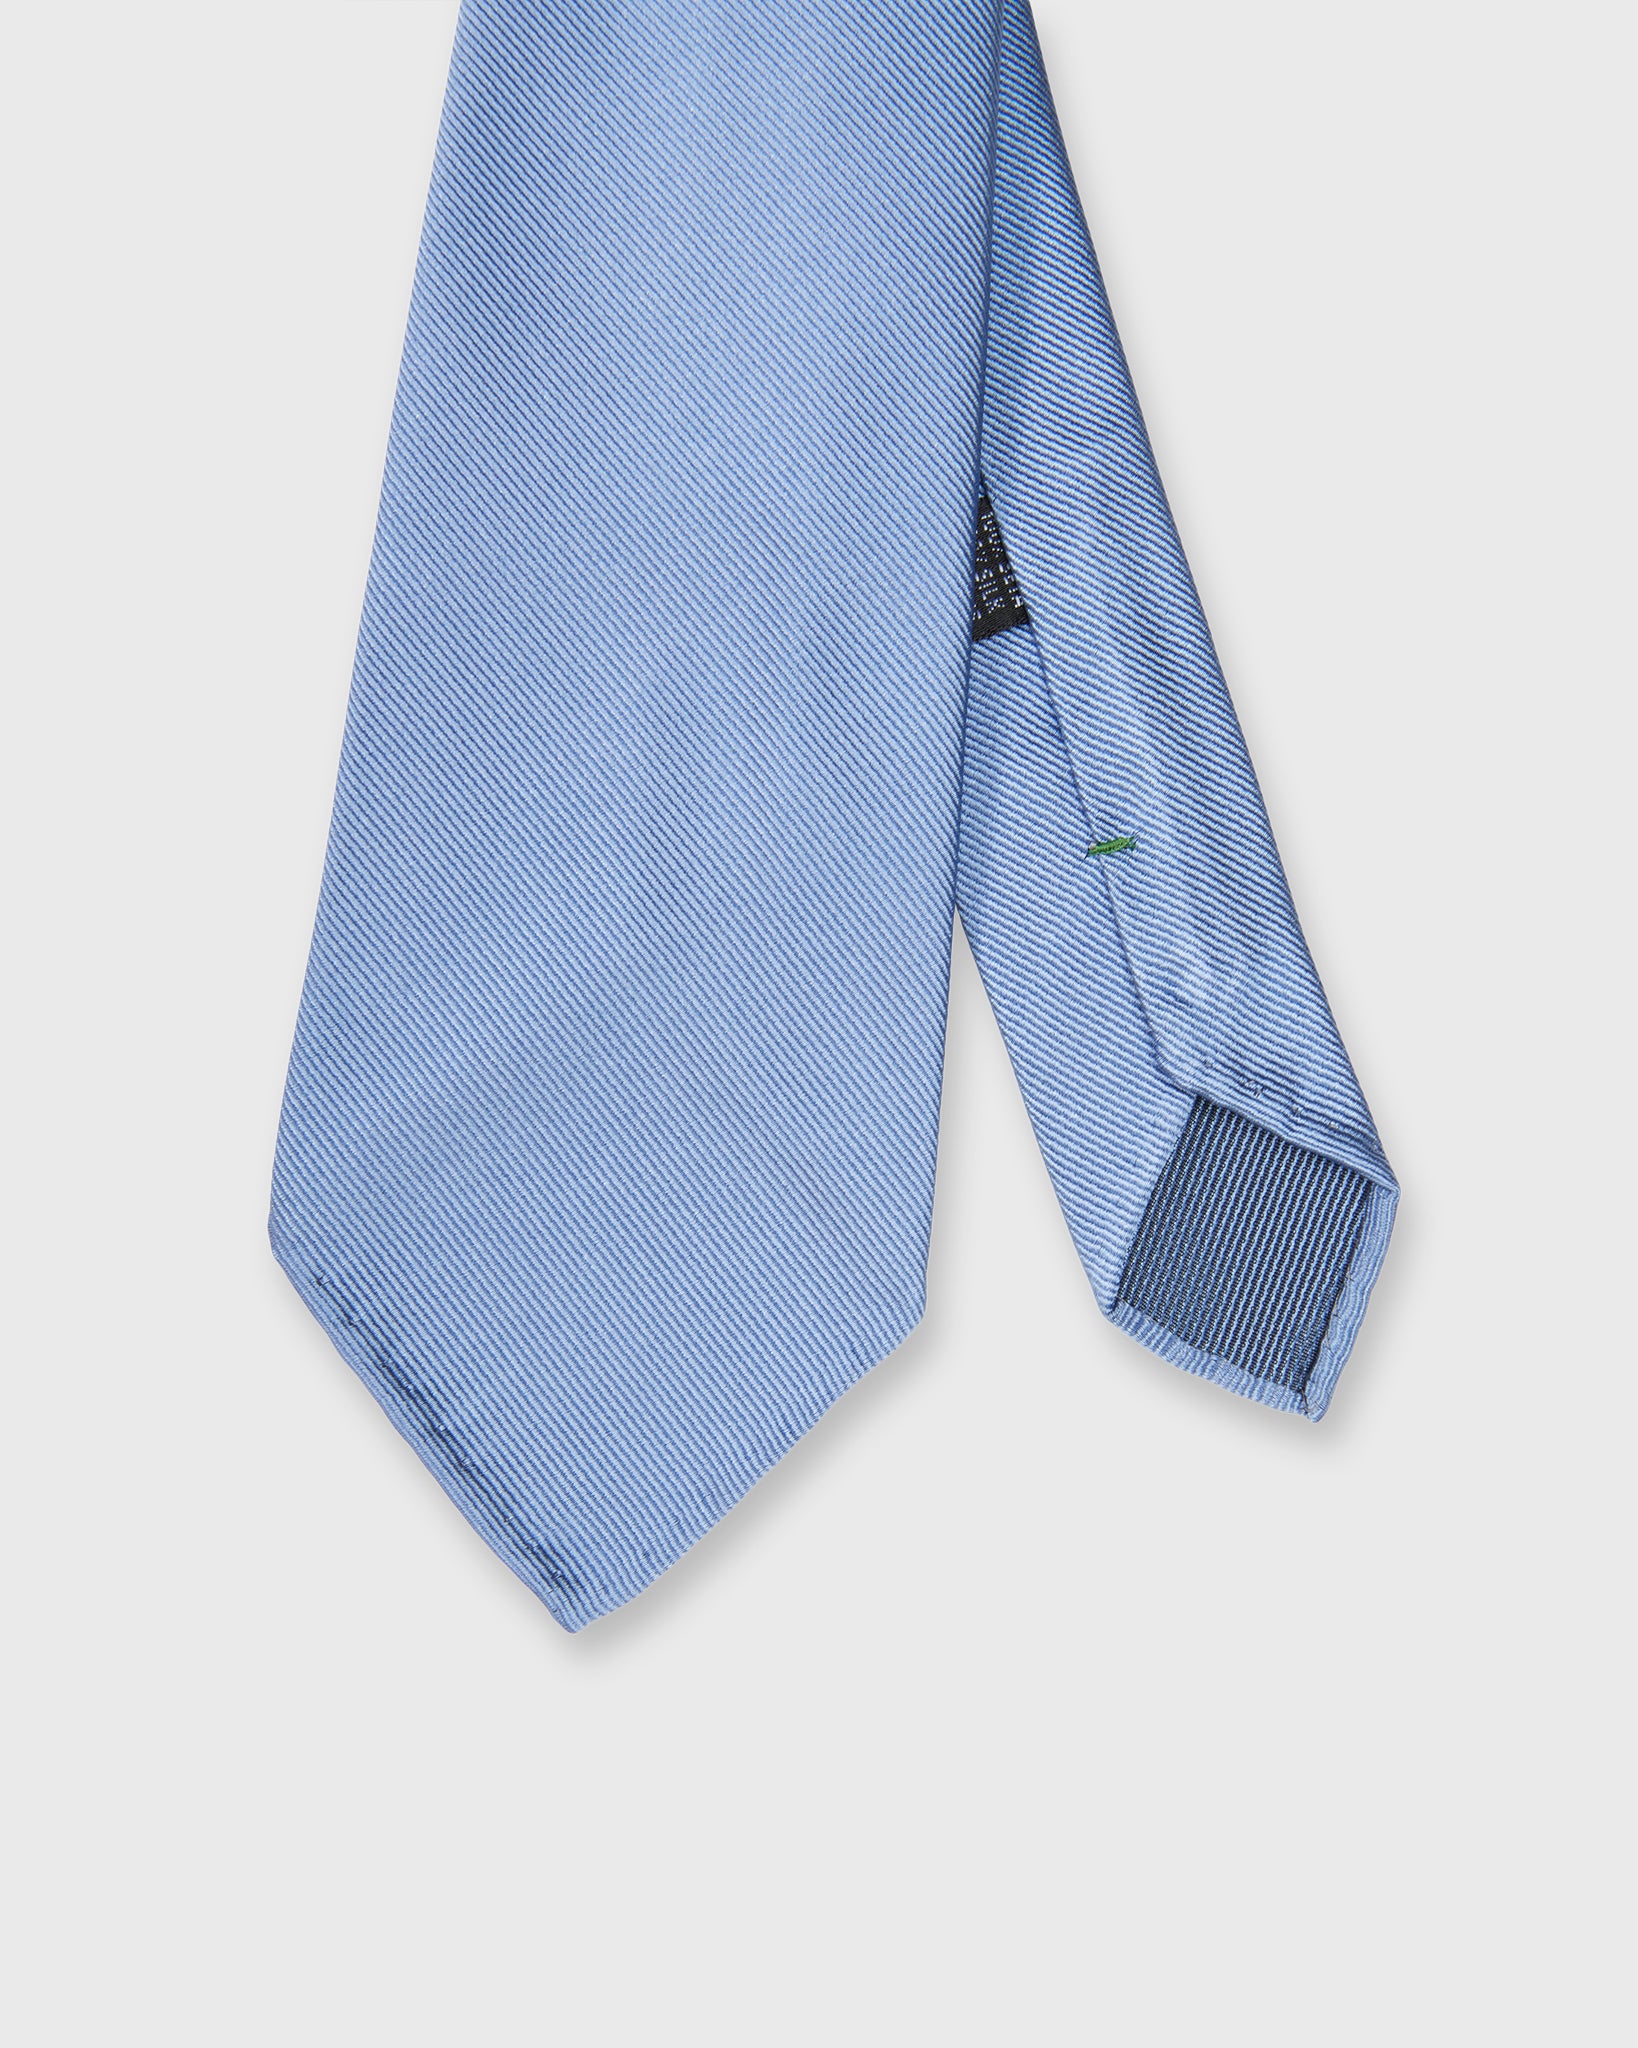 Silk Woven Tie in Sky Blue Twill